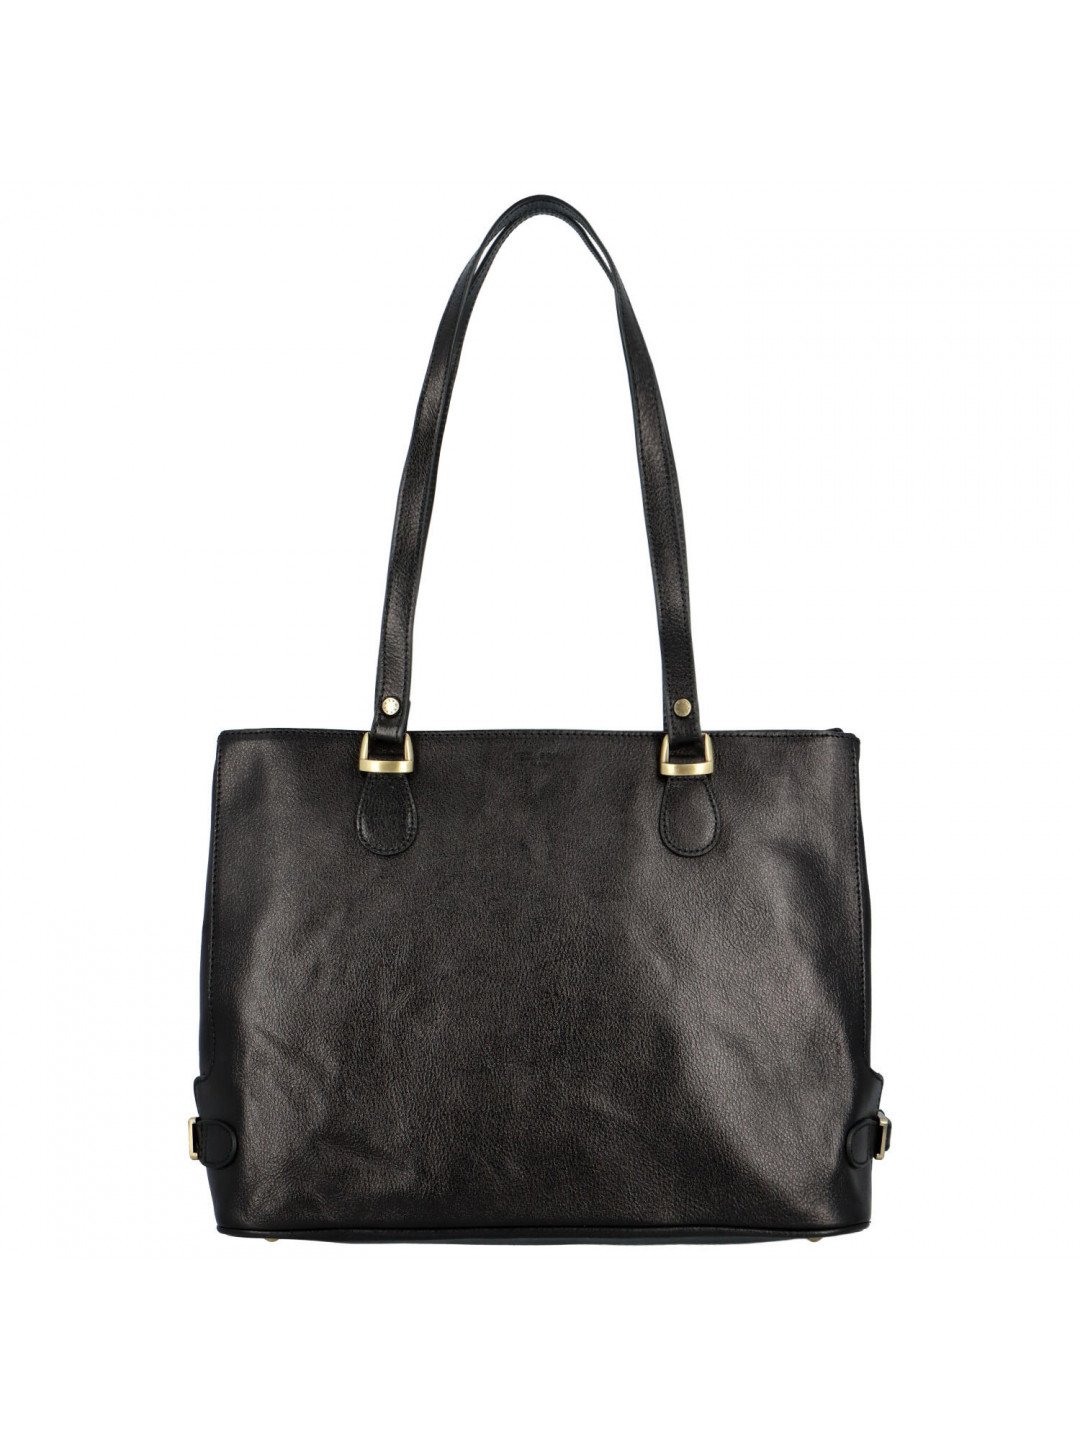 Luxusní dámská kožená kabelka černá – Hexagona Elianna